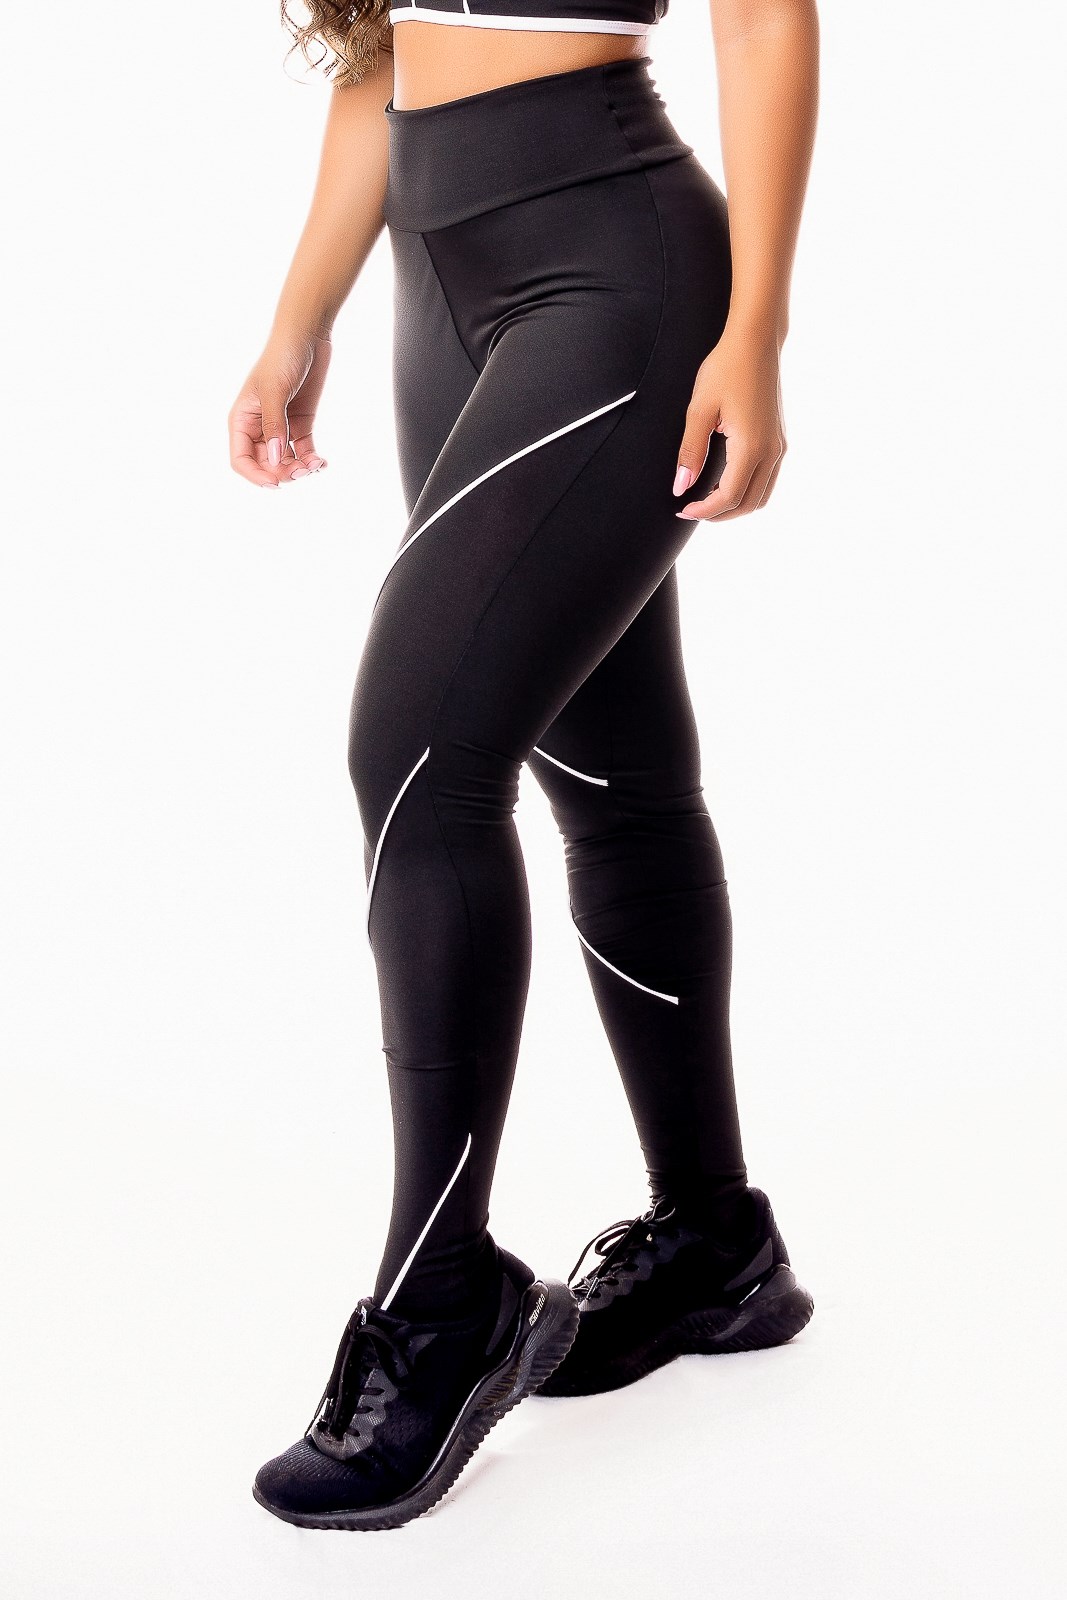 Calça Legging Fitness Academia Preta com Detalhe Lateral em Vivo Branco  Cintura Alta REF: SV36 - Racy Modas